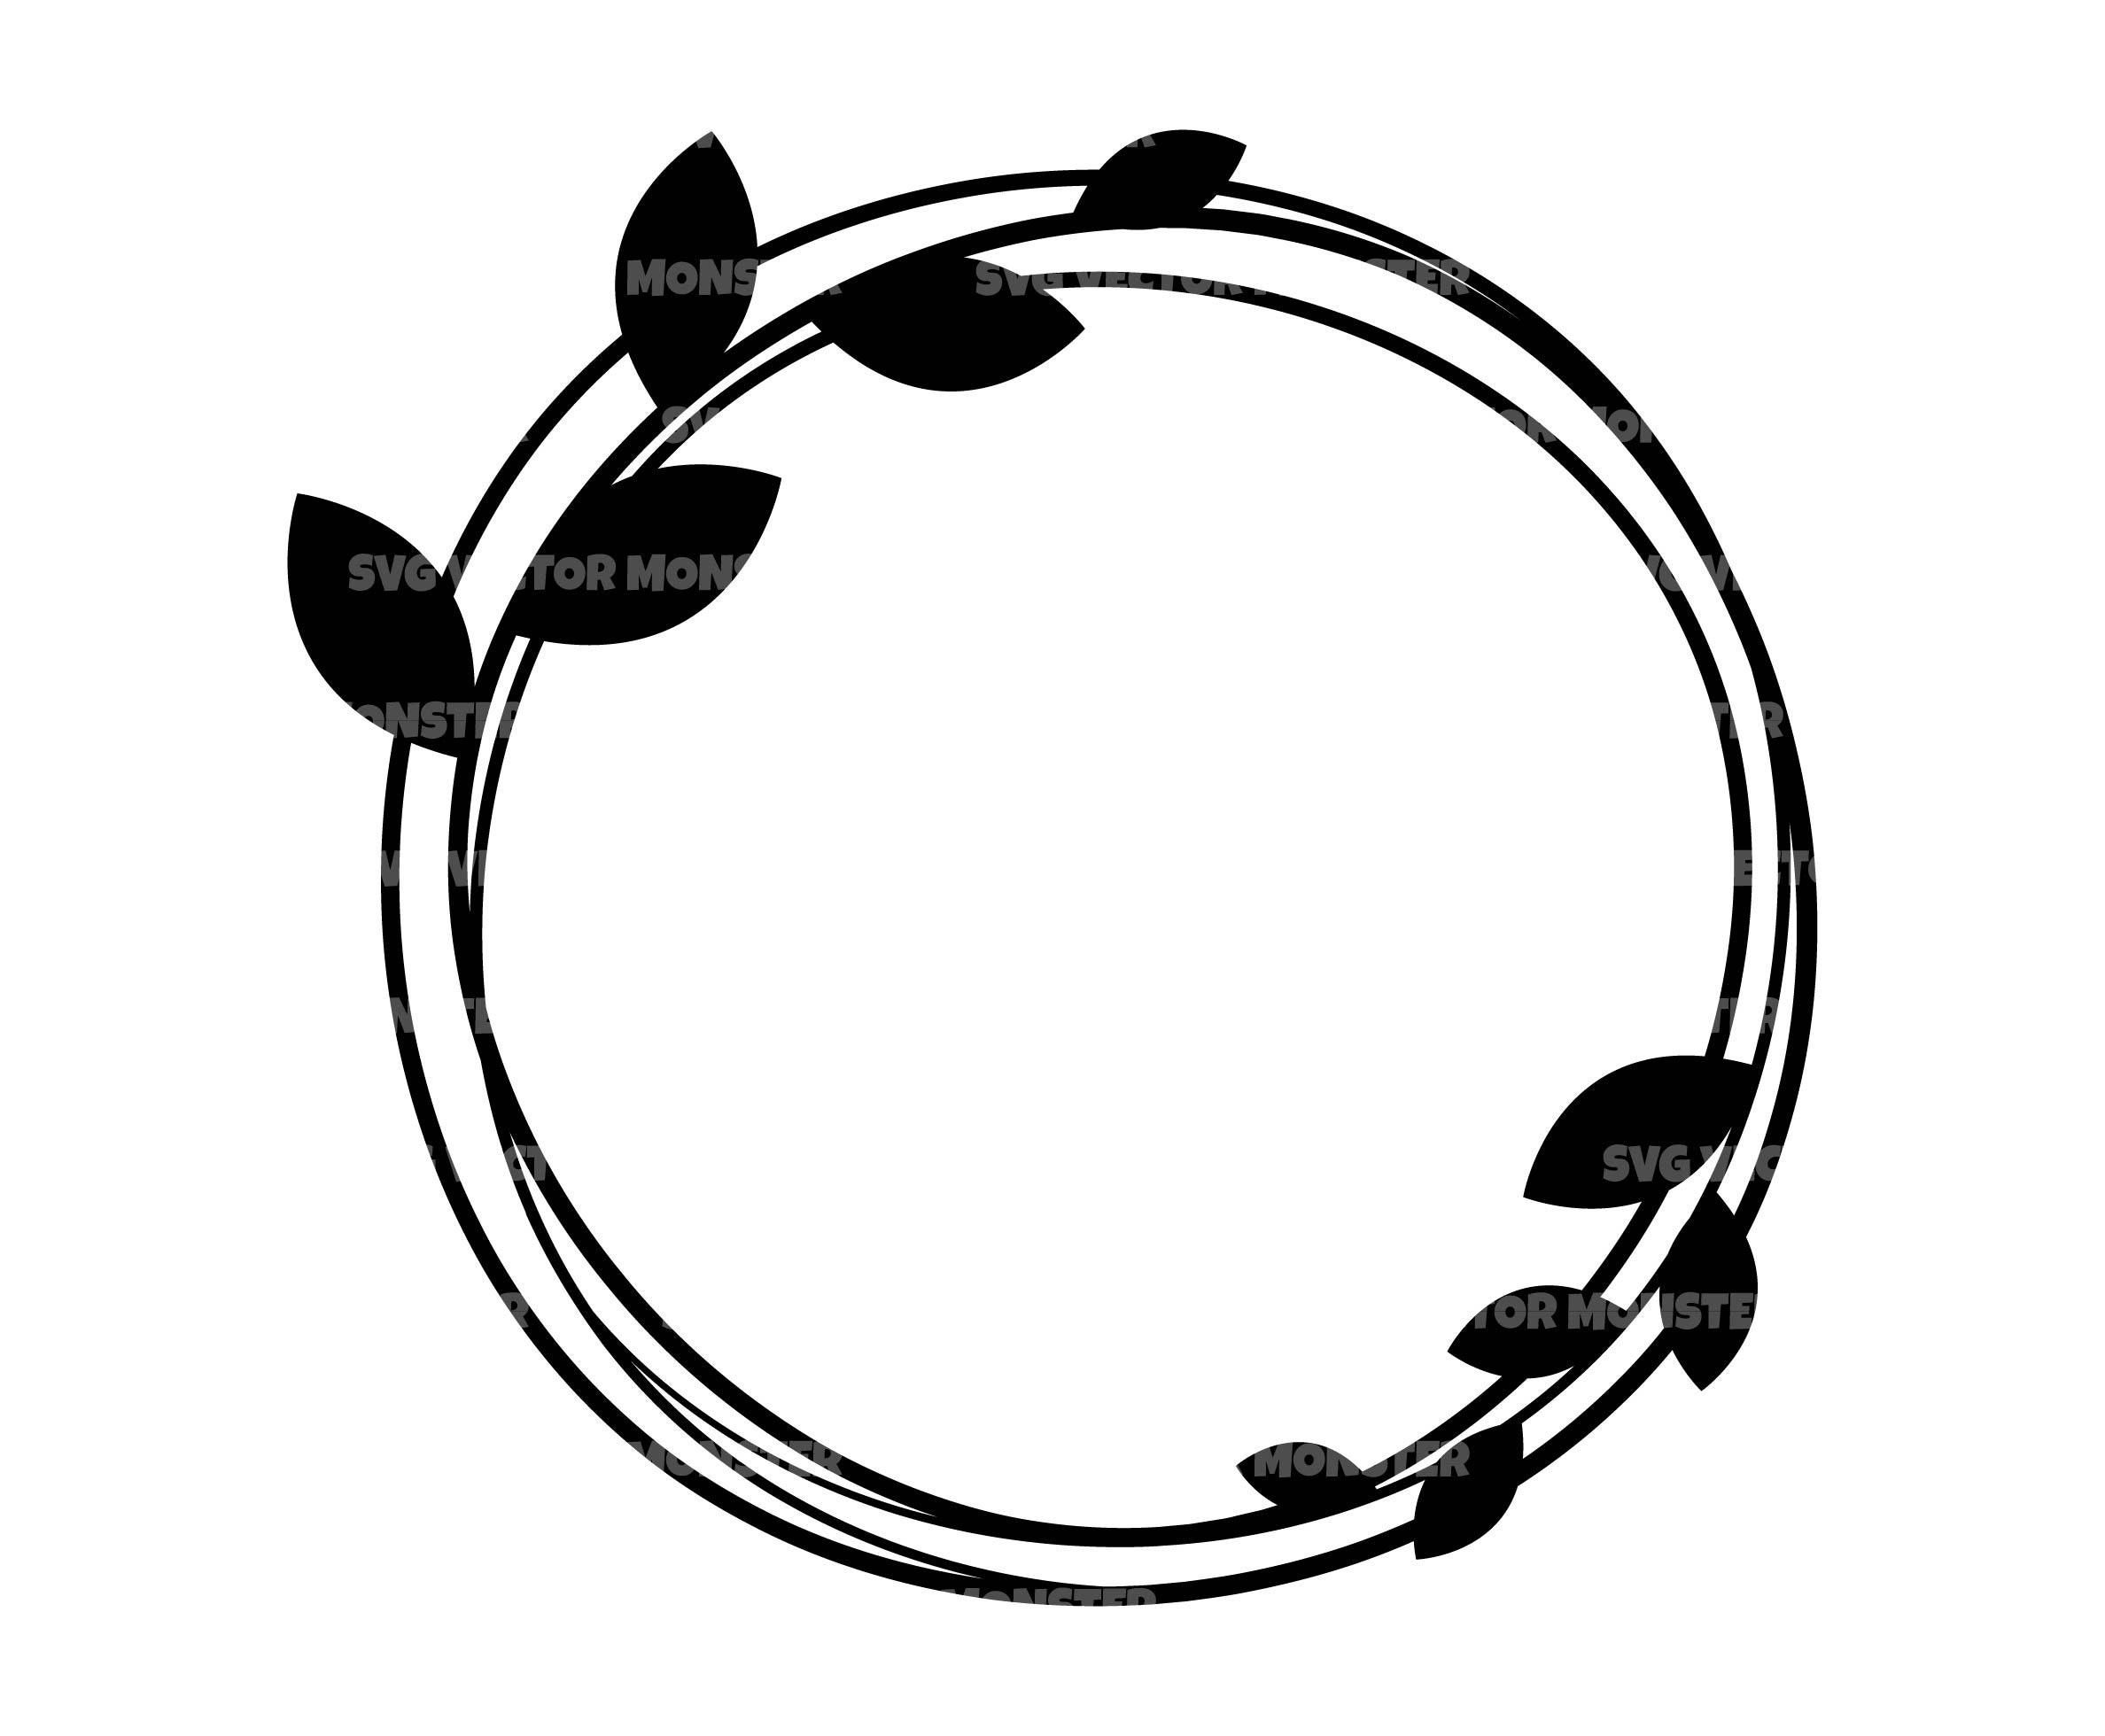 Circular Vine Frame SVG file - SVG Designs